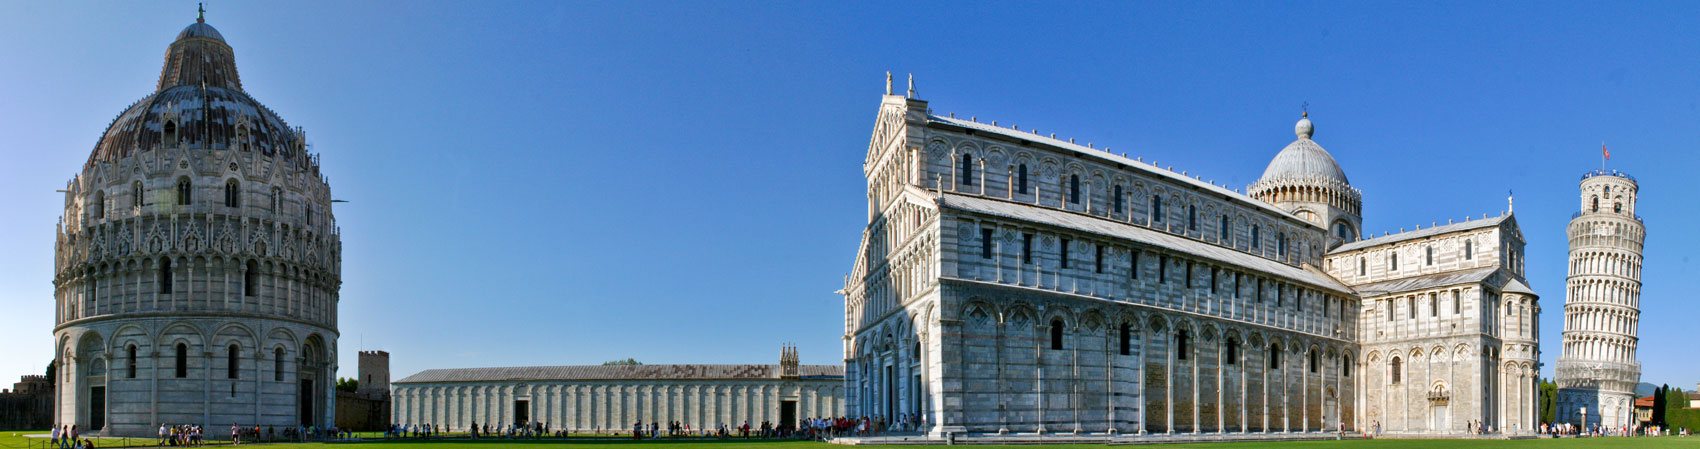 La Plaza de los Milagros y la Torre Inclinada de Pisa, Italia